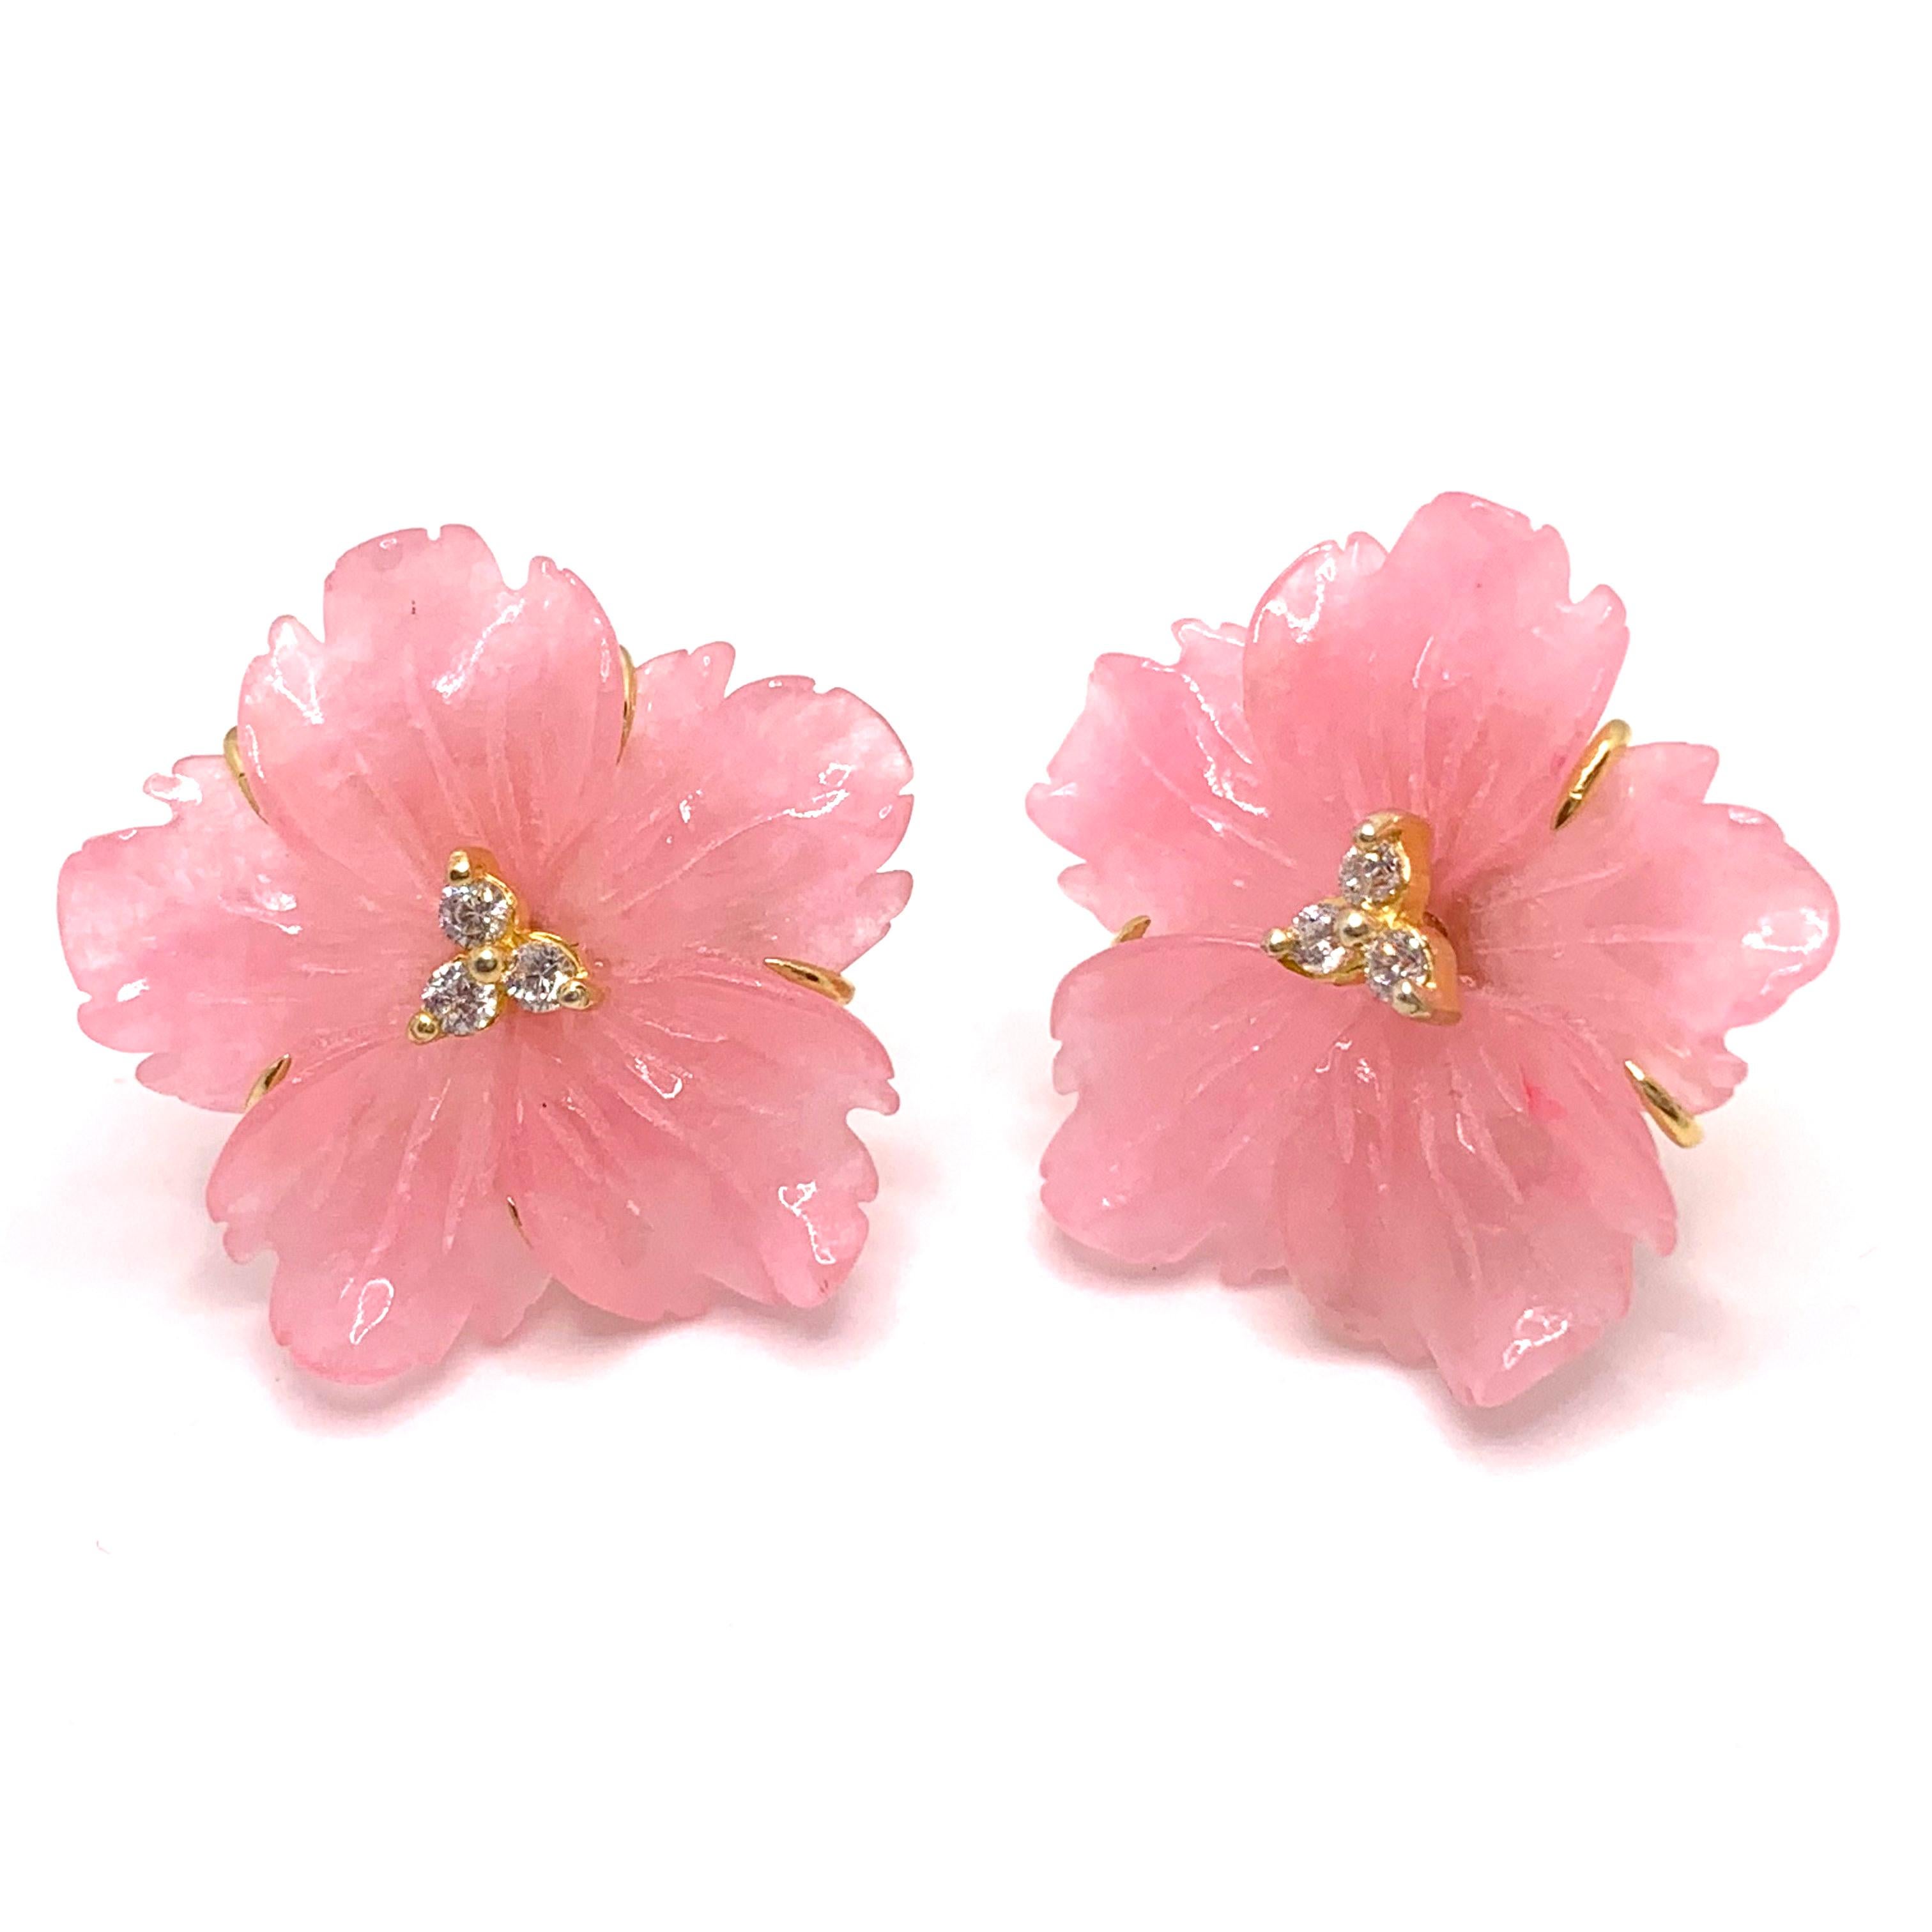 Artisan 24mm Carved Pink Quartzite Flower Vermeil Earrings